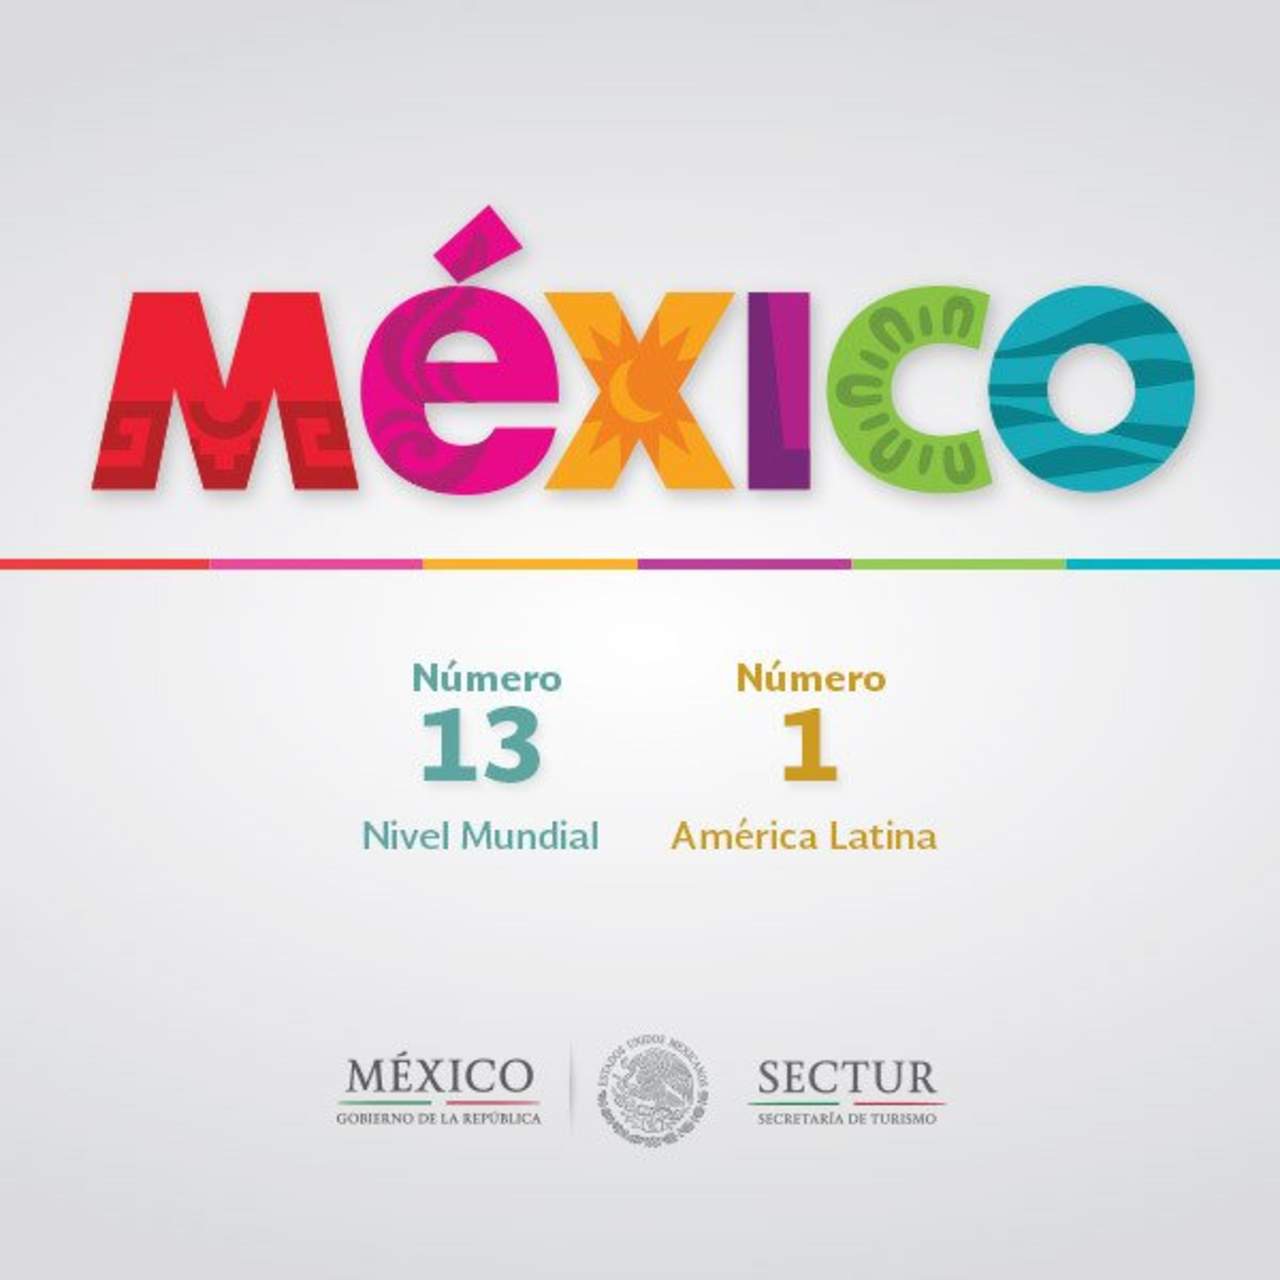 Marca México, entre las 20 más valiosas del mundo